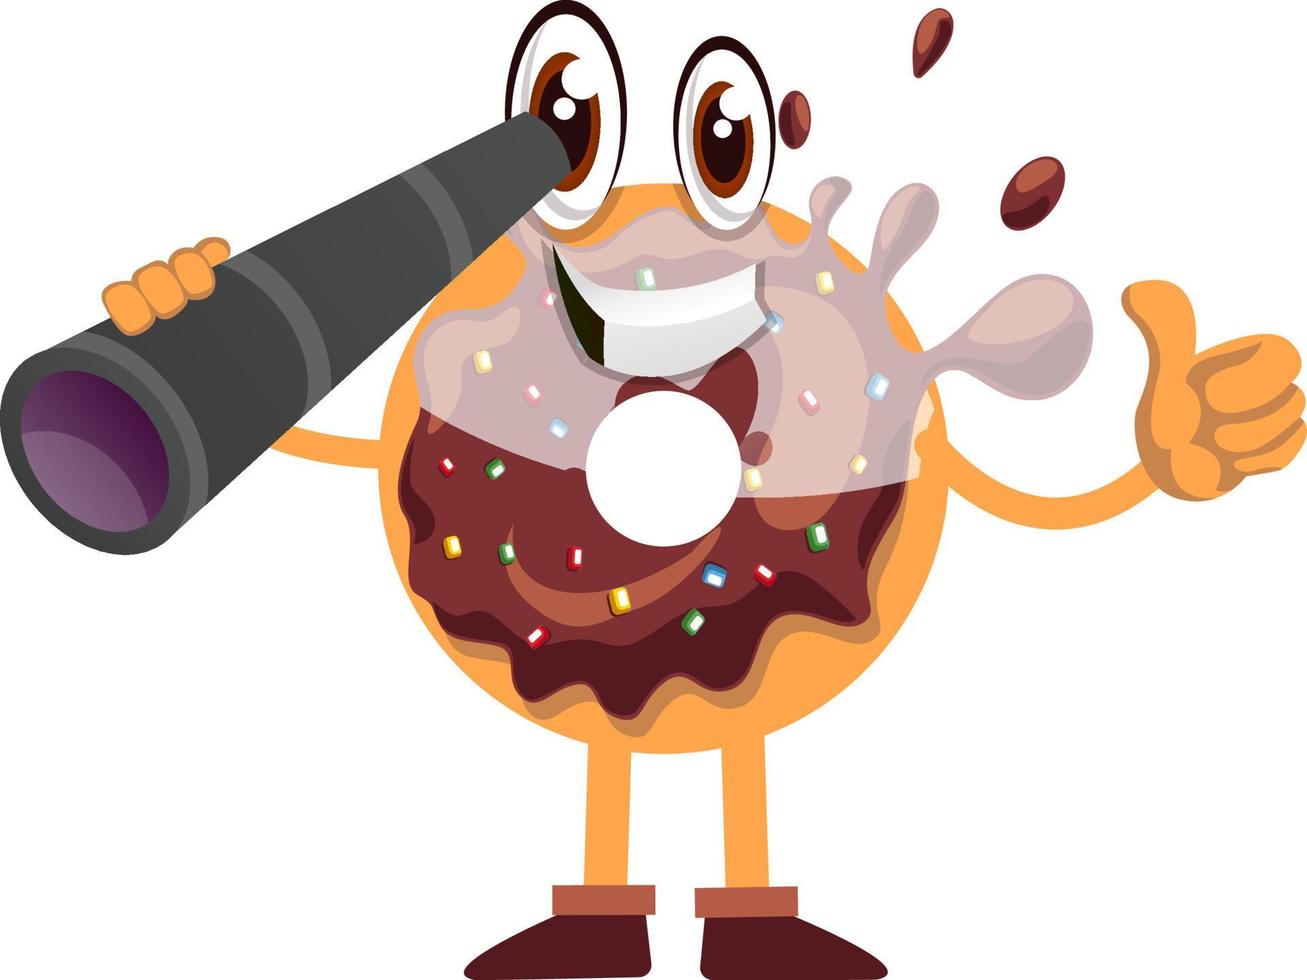 donut con telescopio, ilustración, vector sobre fondo blanco.